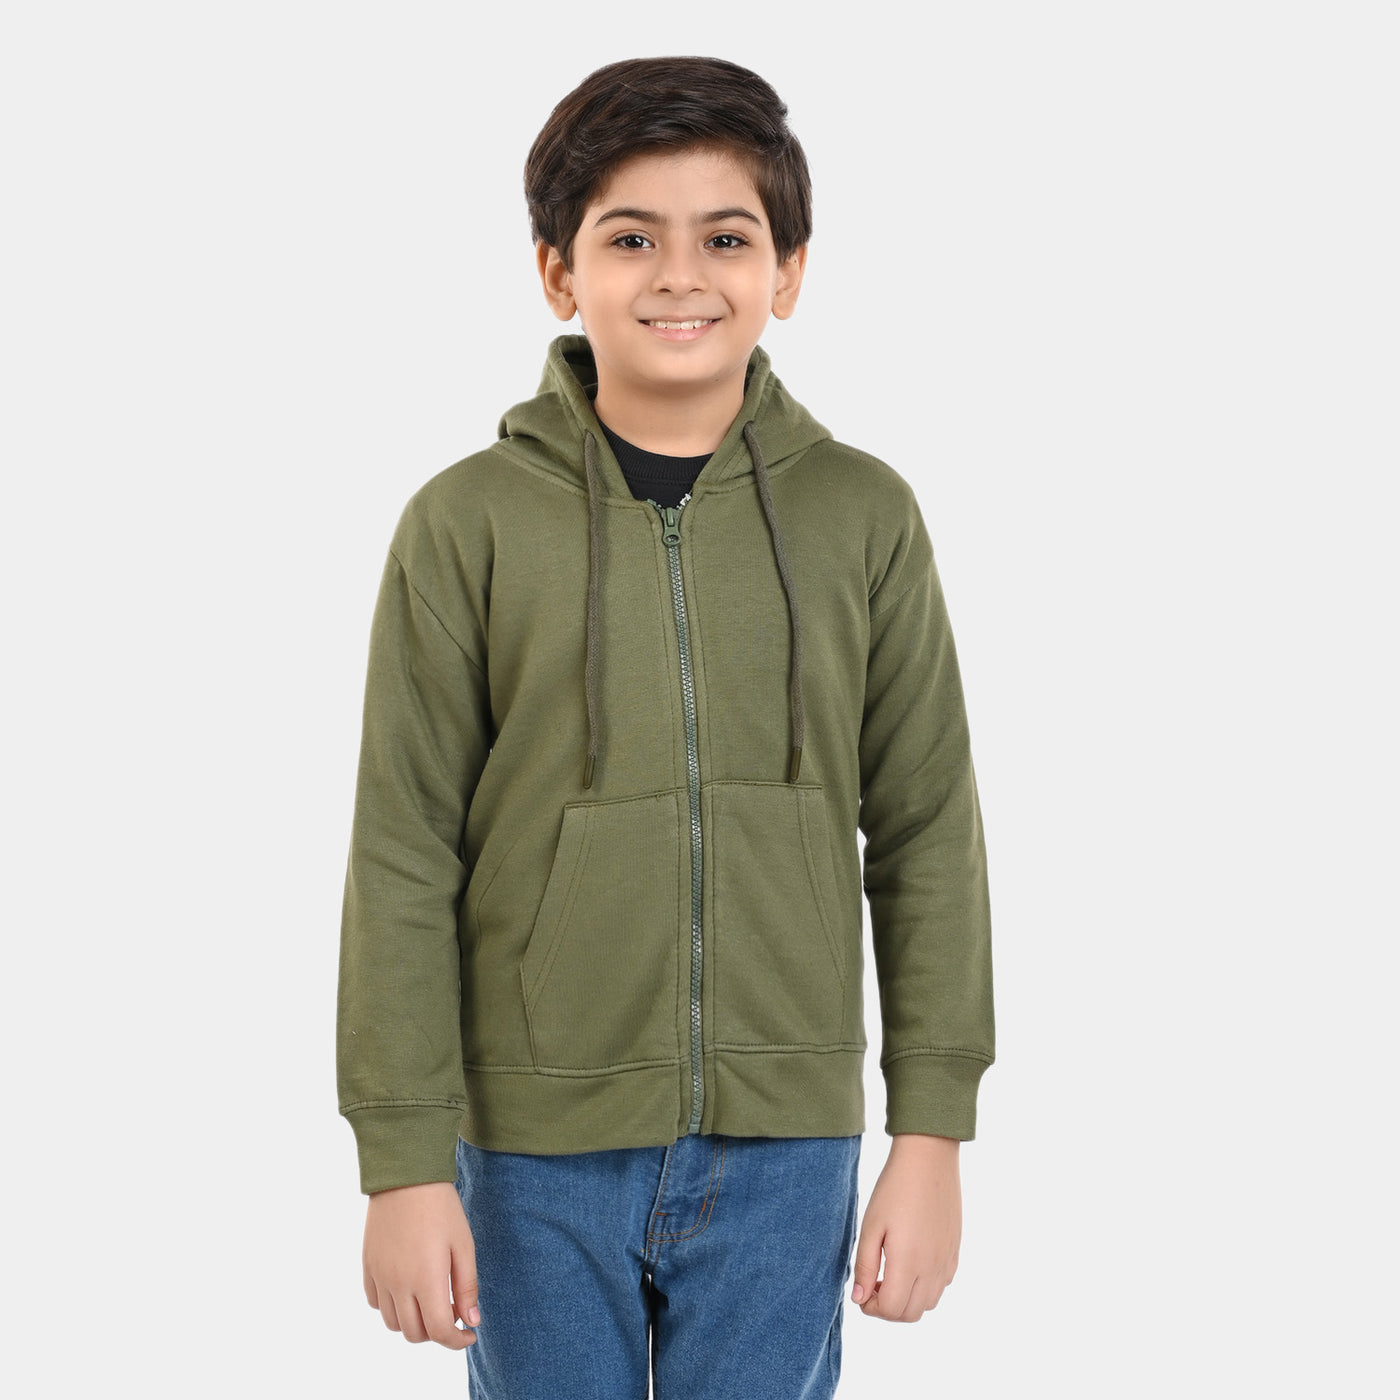 Boys Knitted Zipped Jacket Basic-Olive